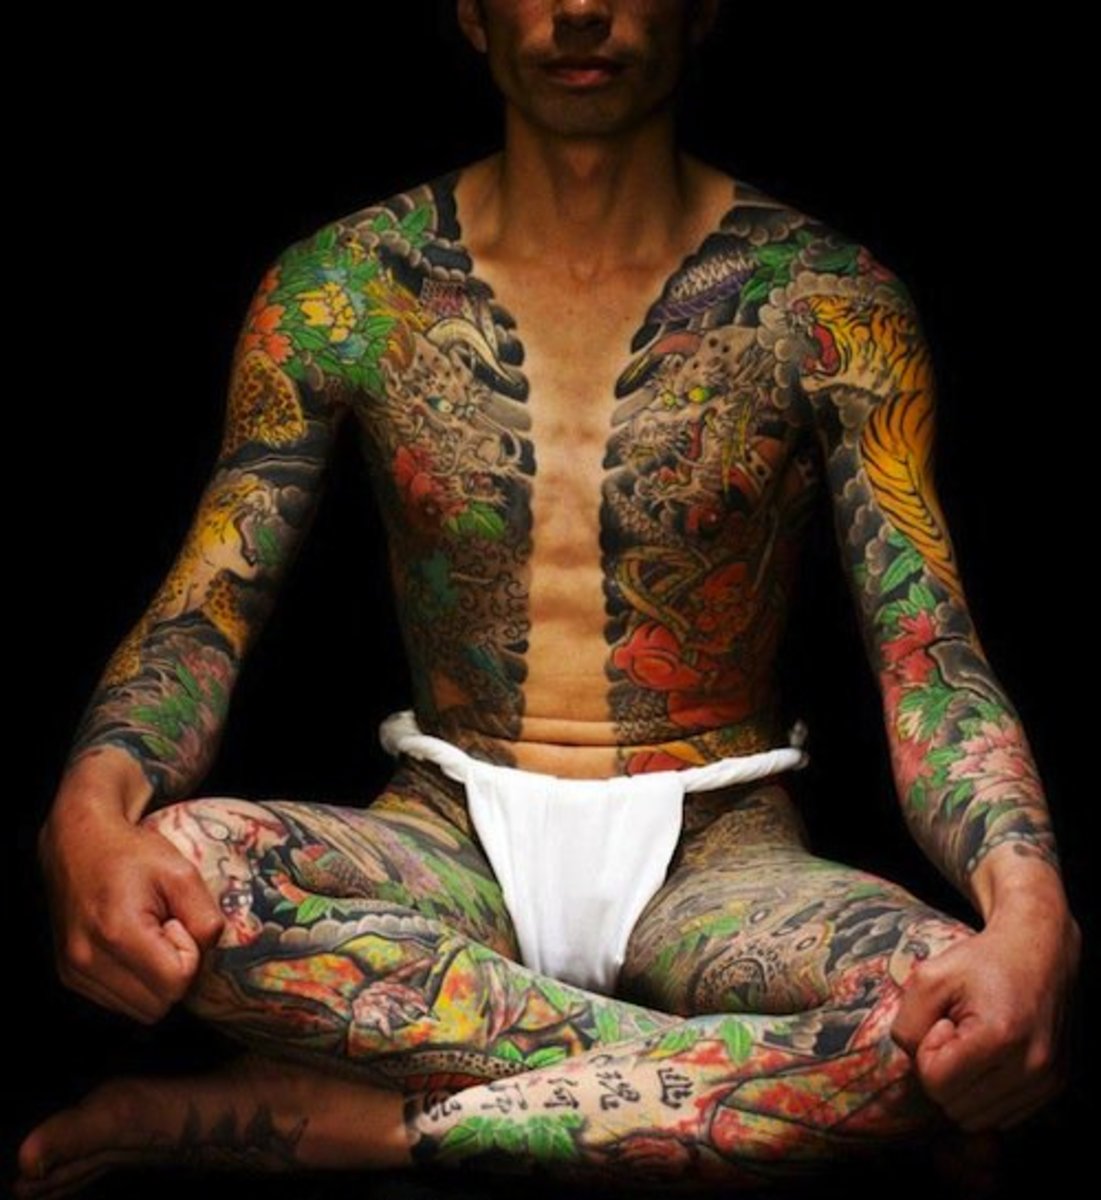 Yakza -tyylinen tatuointi Yoshihito Nakanolta